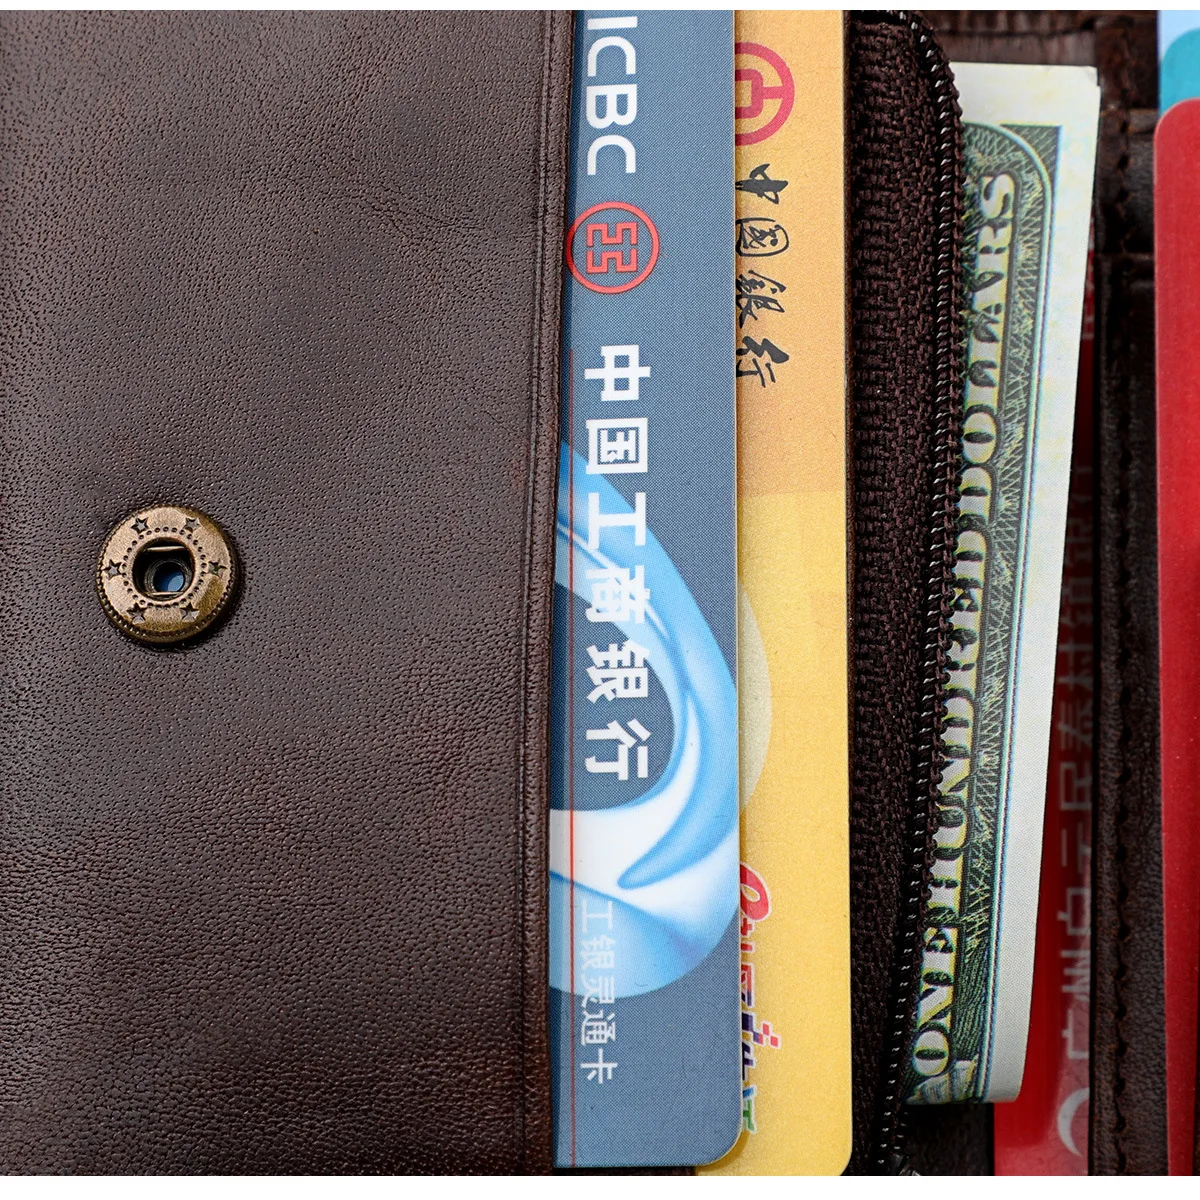 HMILY Женский кошелек из натуральной кожи тонкий женский кошелек RFID кредитница и ID держатель для карт Сменные кошельки женские